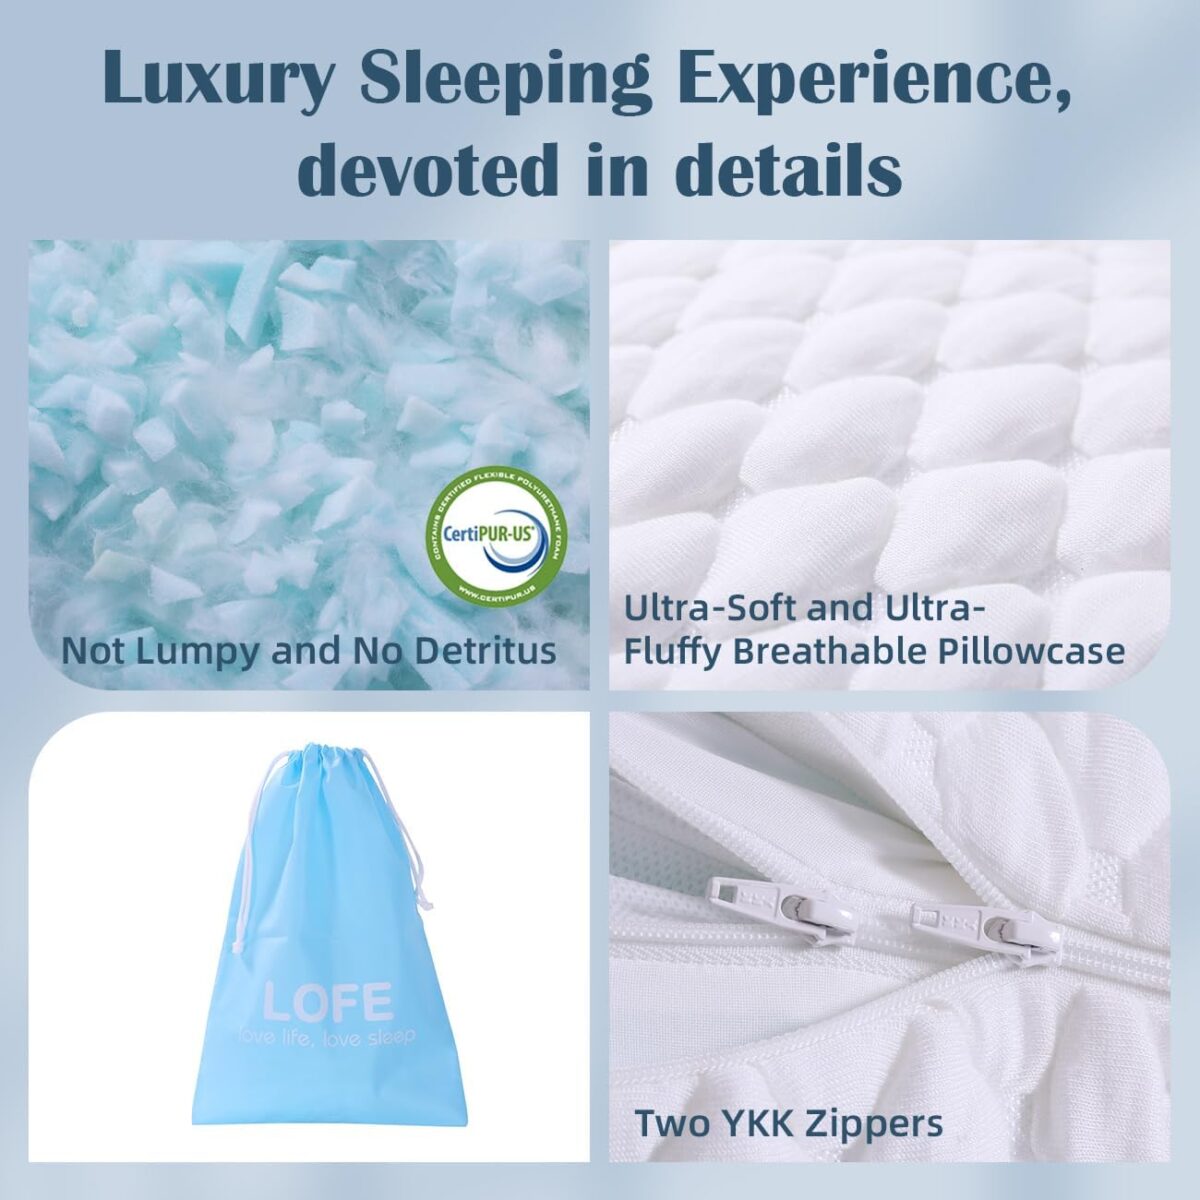 side sleeper pillow, stomach sleeper pillows, cervical pillow for neck pain, pillow for side sleepers, neck support pillows for sleeping